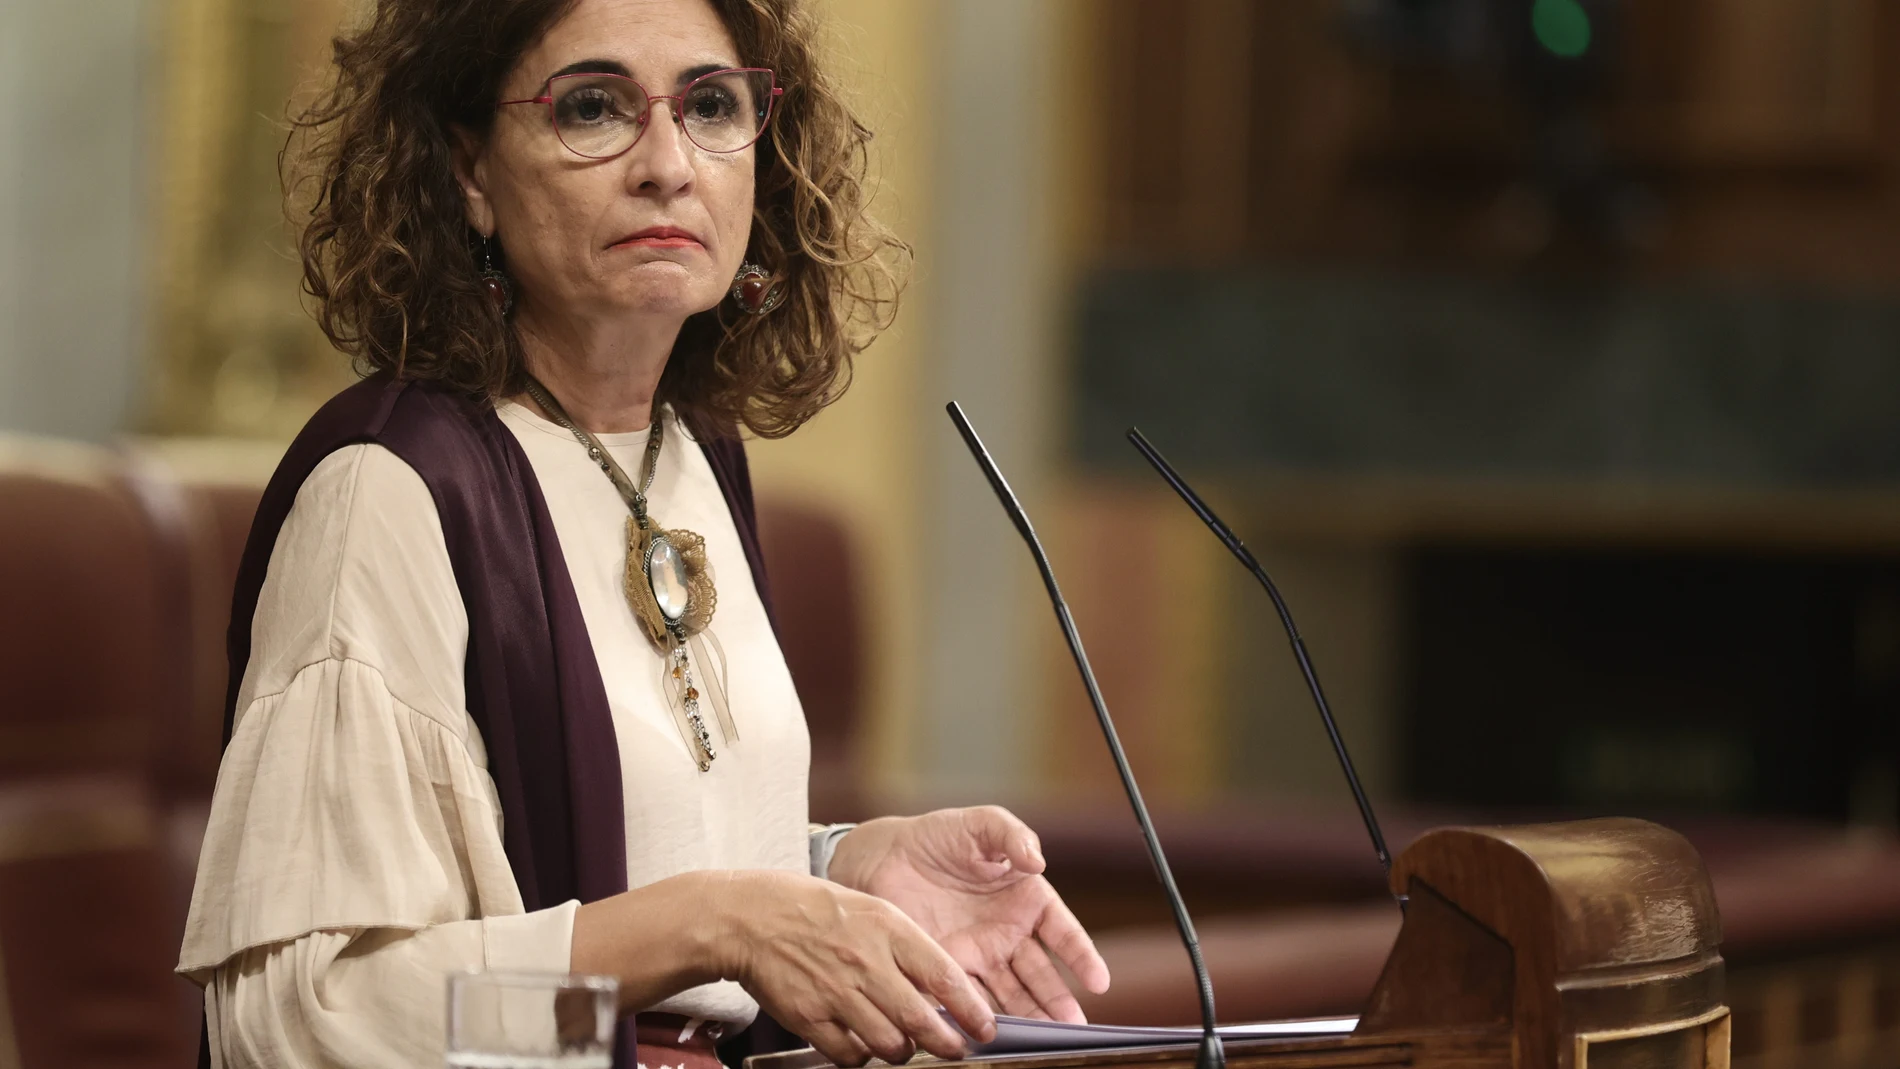 La ministra de Hacienda, María Jesús Montero, durante una sesión plenaria en el Congreso de los Diputados celebrada el pasado 20 de octubre